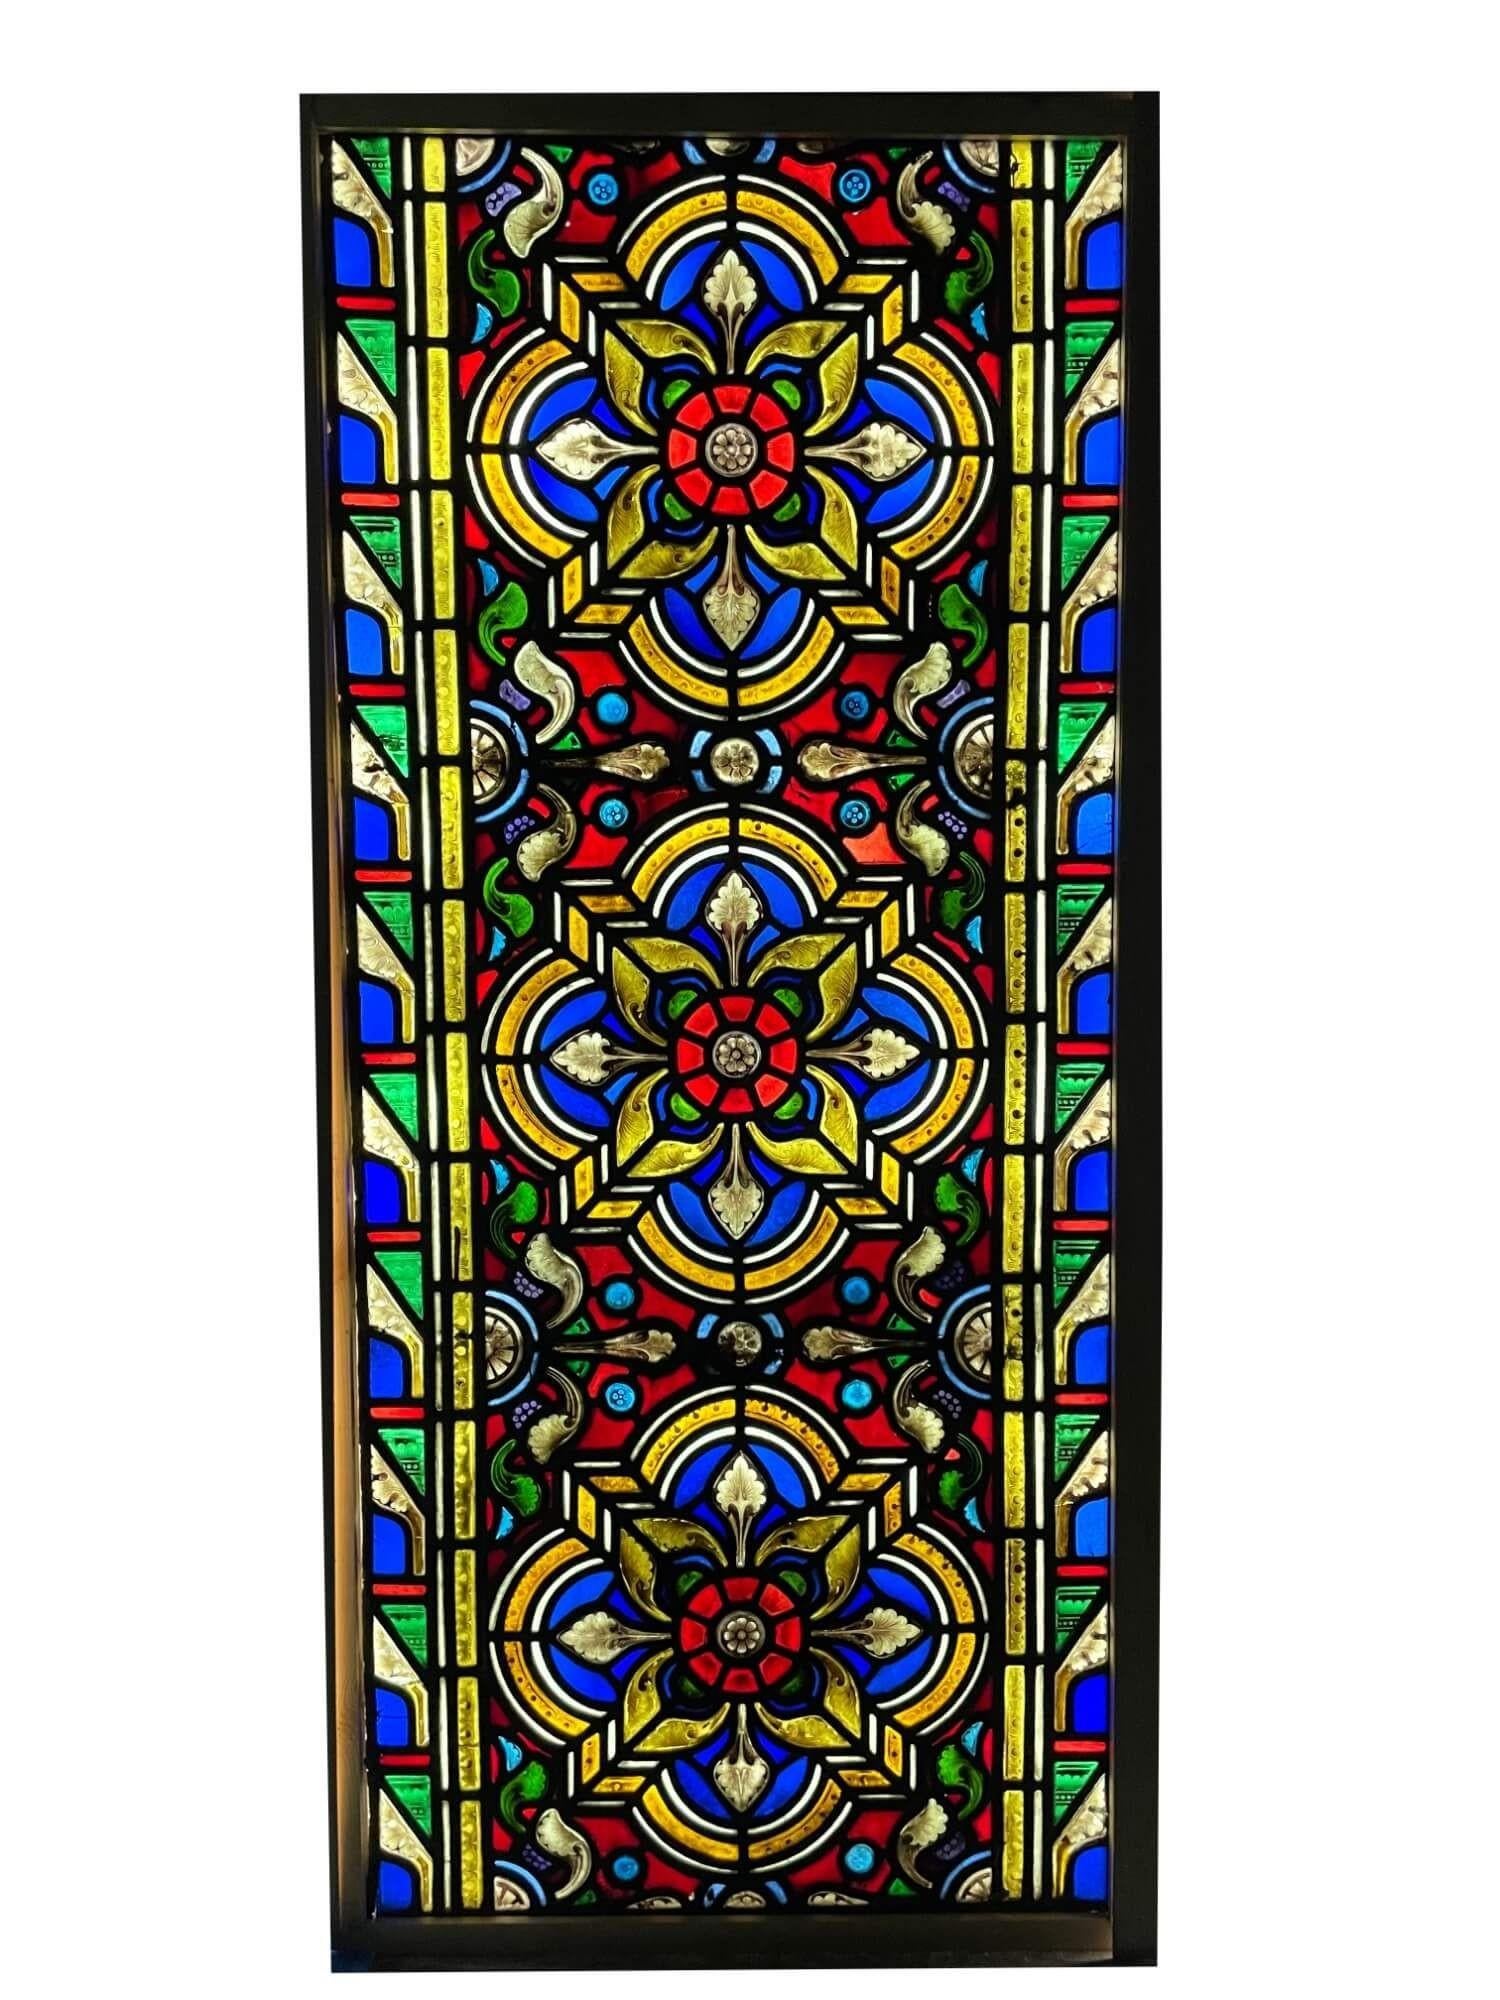 Ein antikes viktorianisches Glasfenster aus dem späten 19. Jahrhundert, das ursprünglich aus einer Kirche in Nordengland stammt. Drei handgemalte, detaillierte Blumen, von denen man annimmt, dass es sich um Tudor-Rosen handelt, bilden das Herzstück